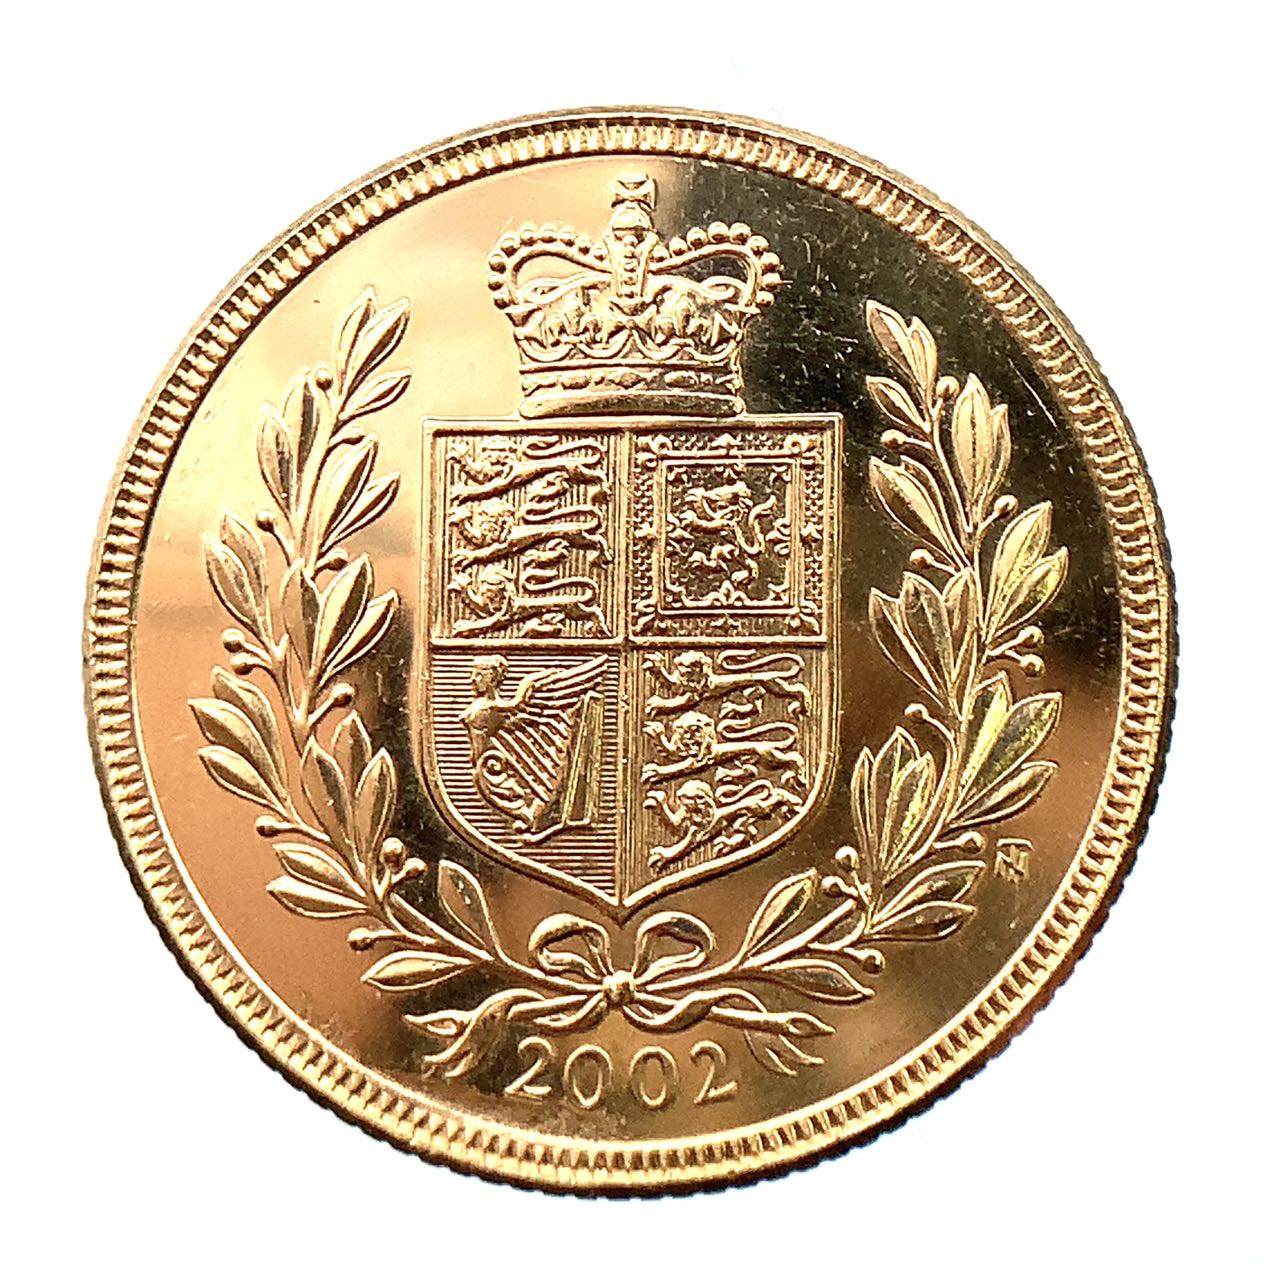 英国 2002年 金貨 エリザベス2世女王 即位50周年記念 22金 7.9g イエローゴールド GOLD コレクション 美品